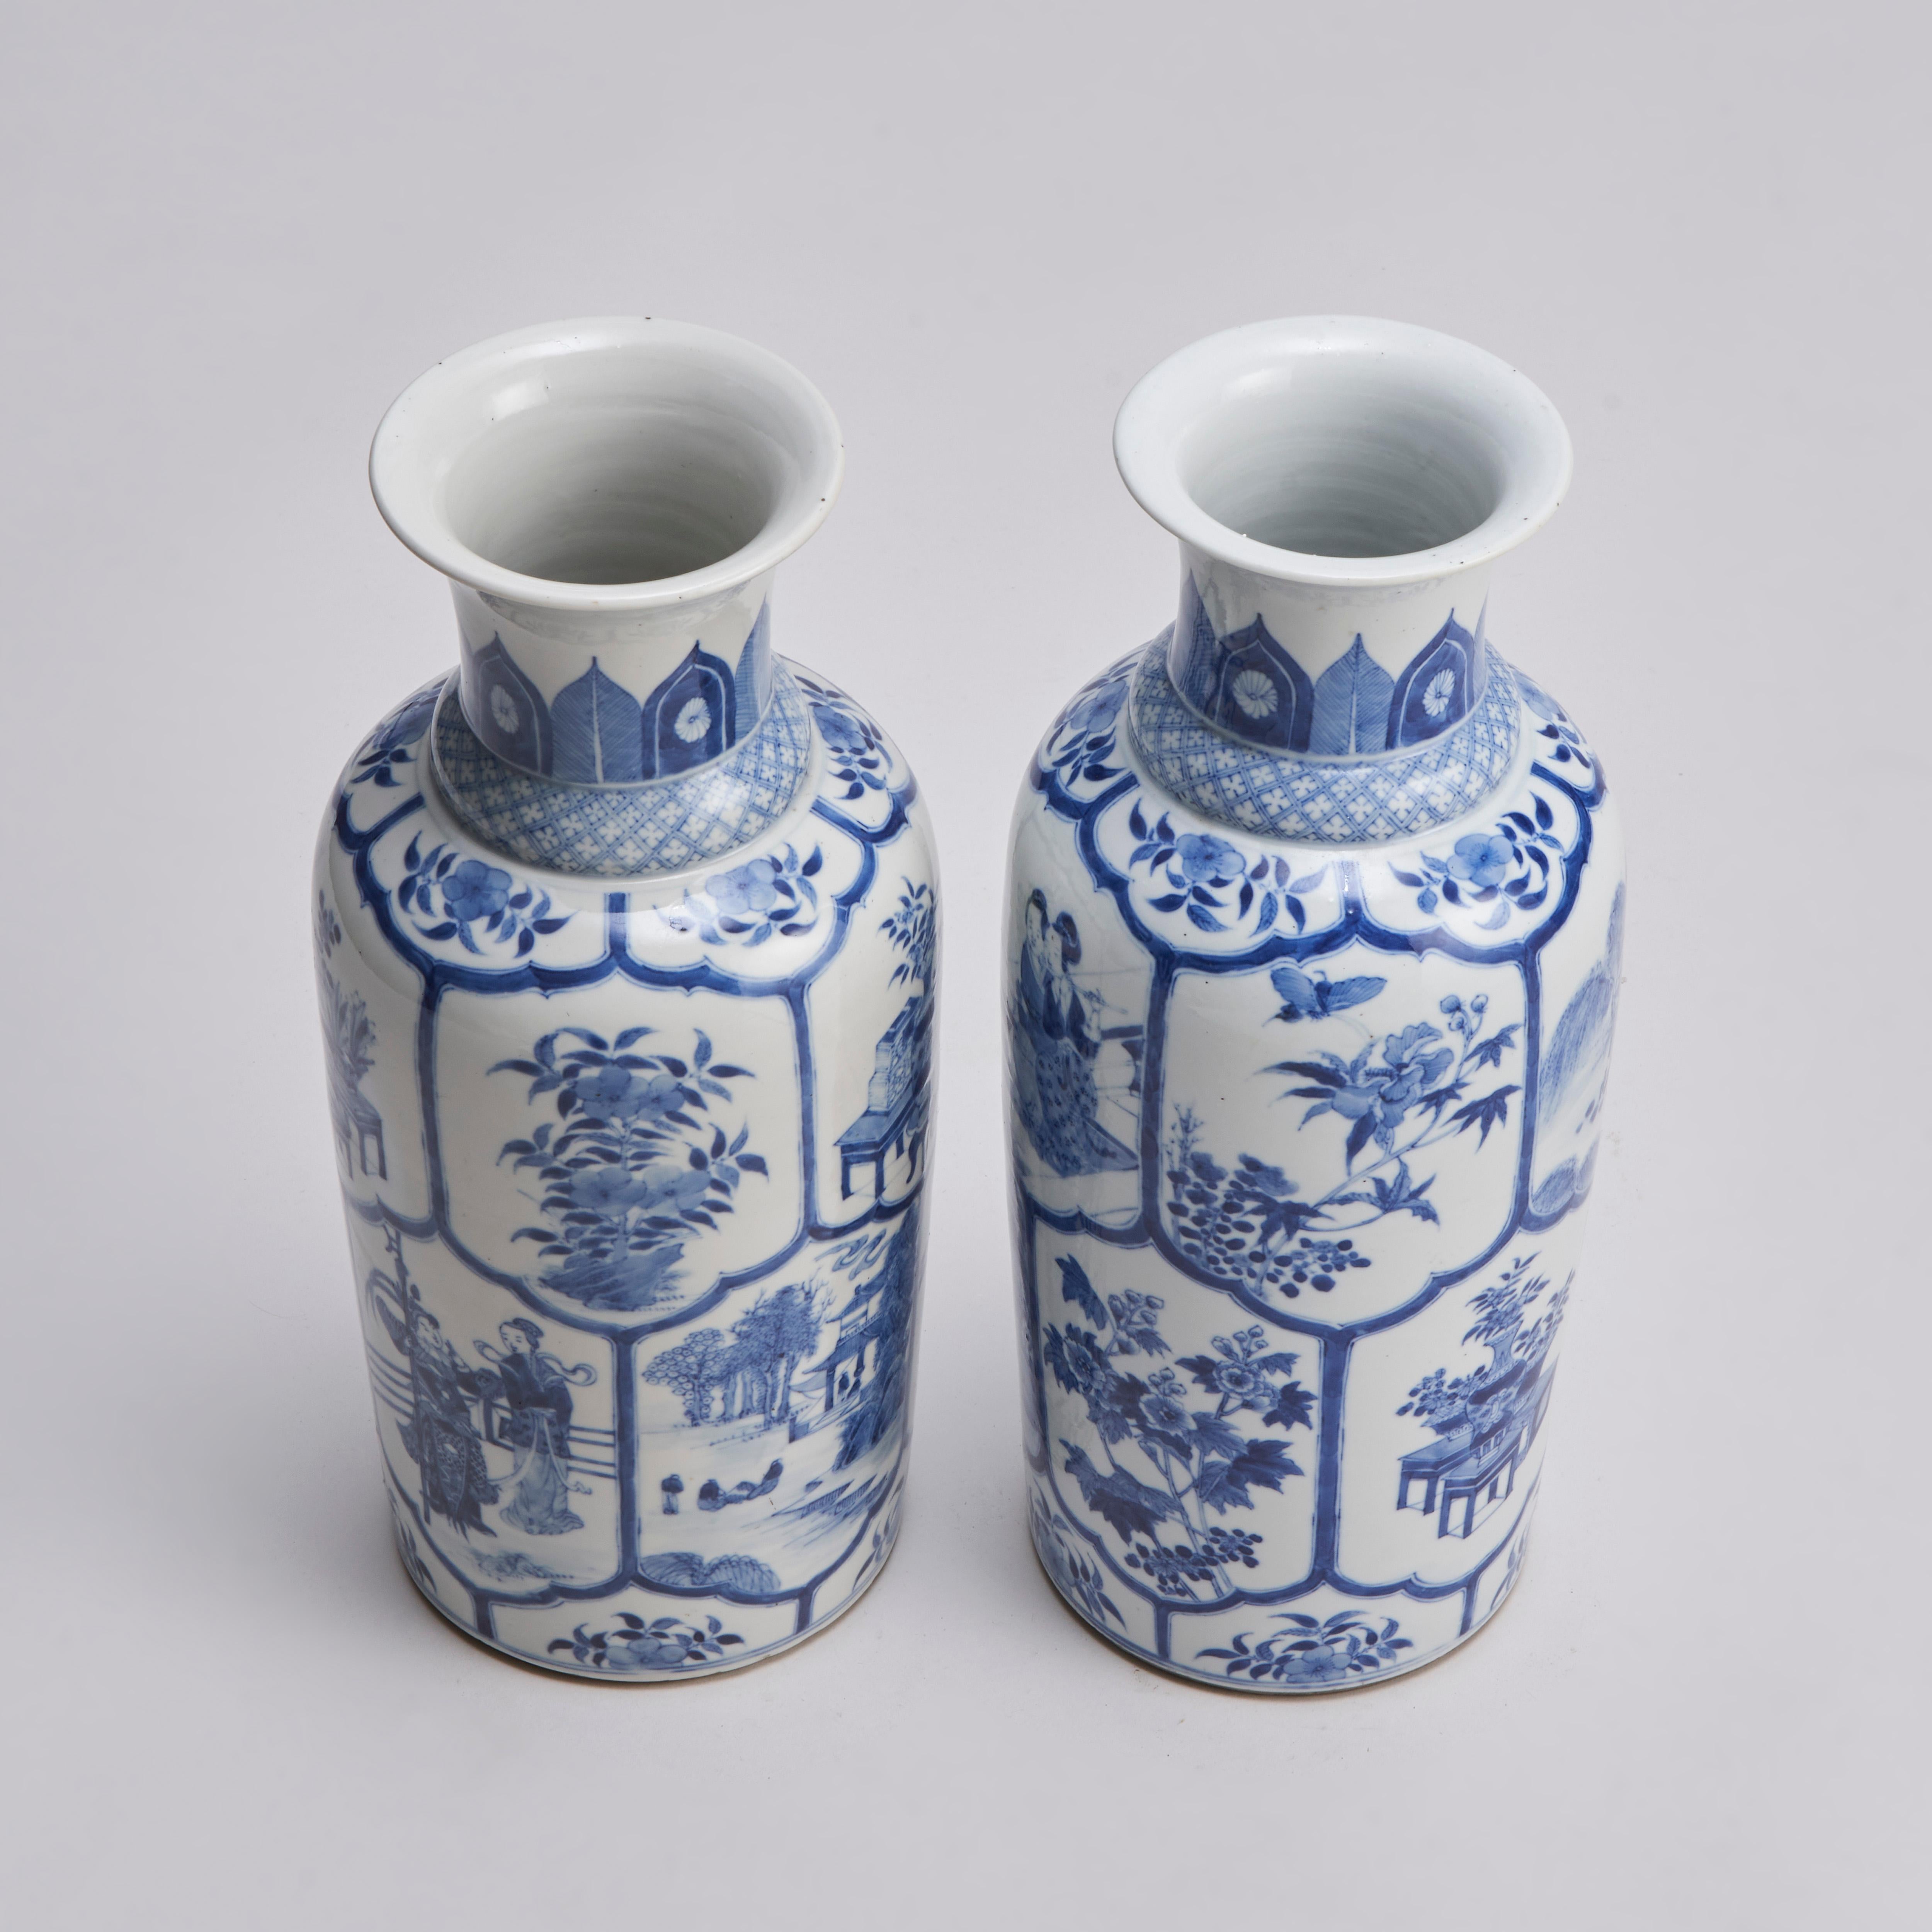 De notre collection de porcelaines chinoises anciennes, une paire de vases chinois bleu et blanc du 19e siècle avec un décor imbriqué de nombreux panneaux représentant des arbustes en fleurs et des insectes, des dames de cour à leur aise, des